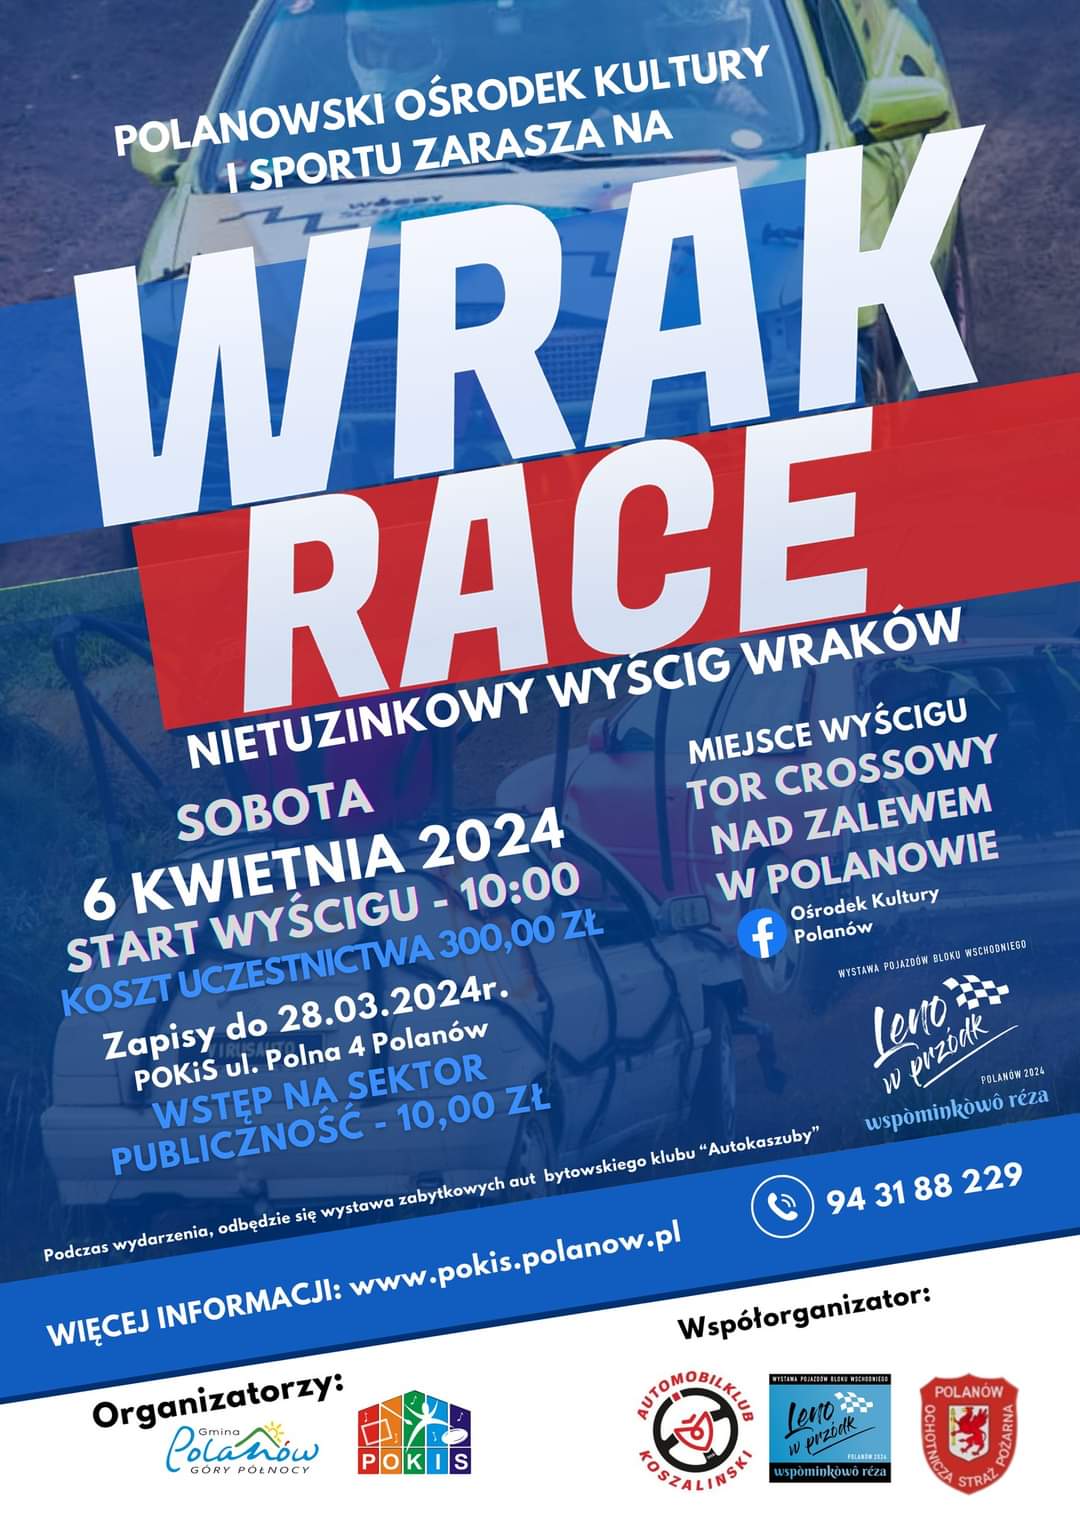 Plakat z zaproszeniem na wrake race nietuzinkowy wyścig wraków w Polanowie 6 kwietnia 2024